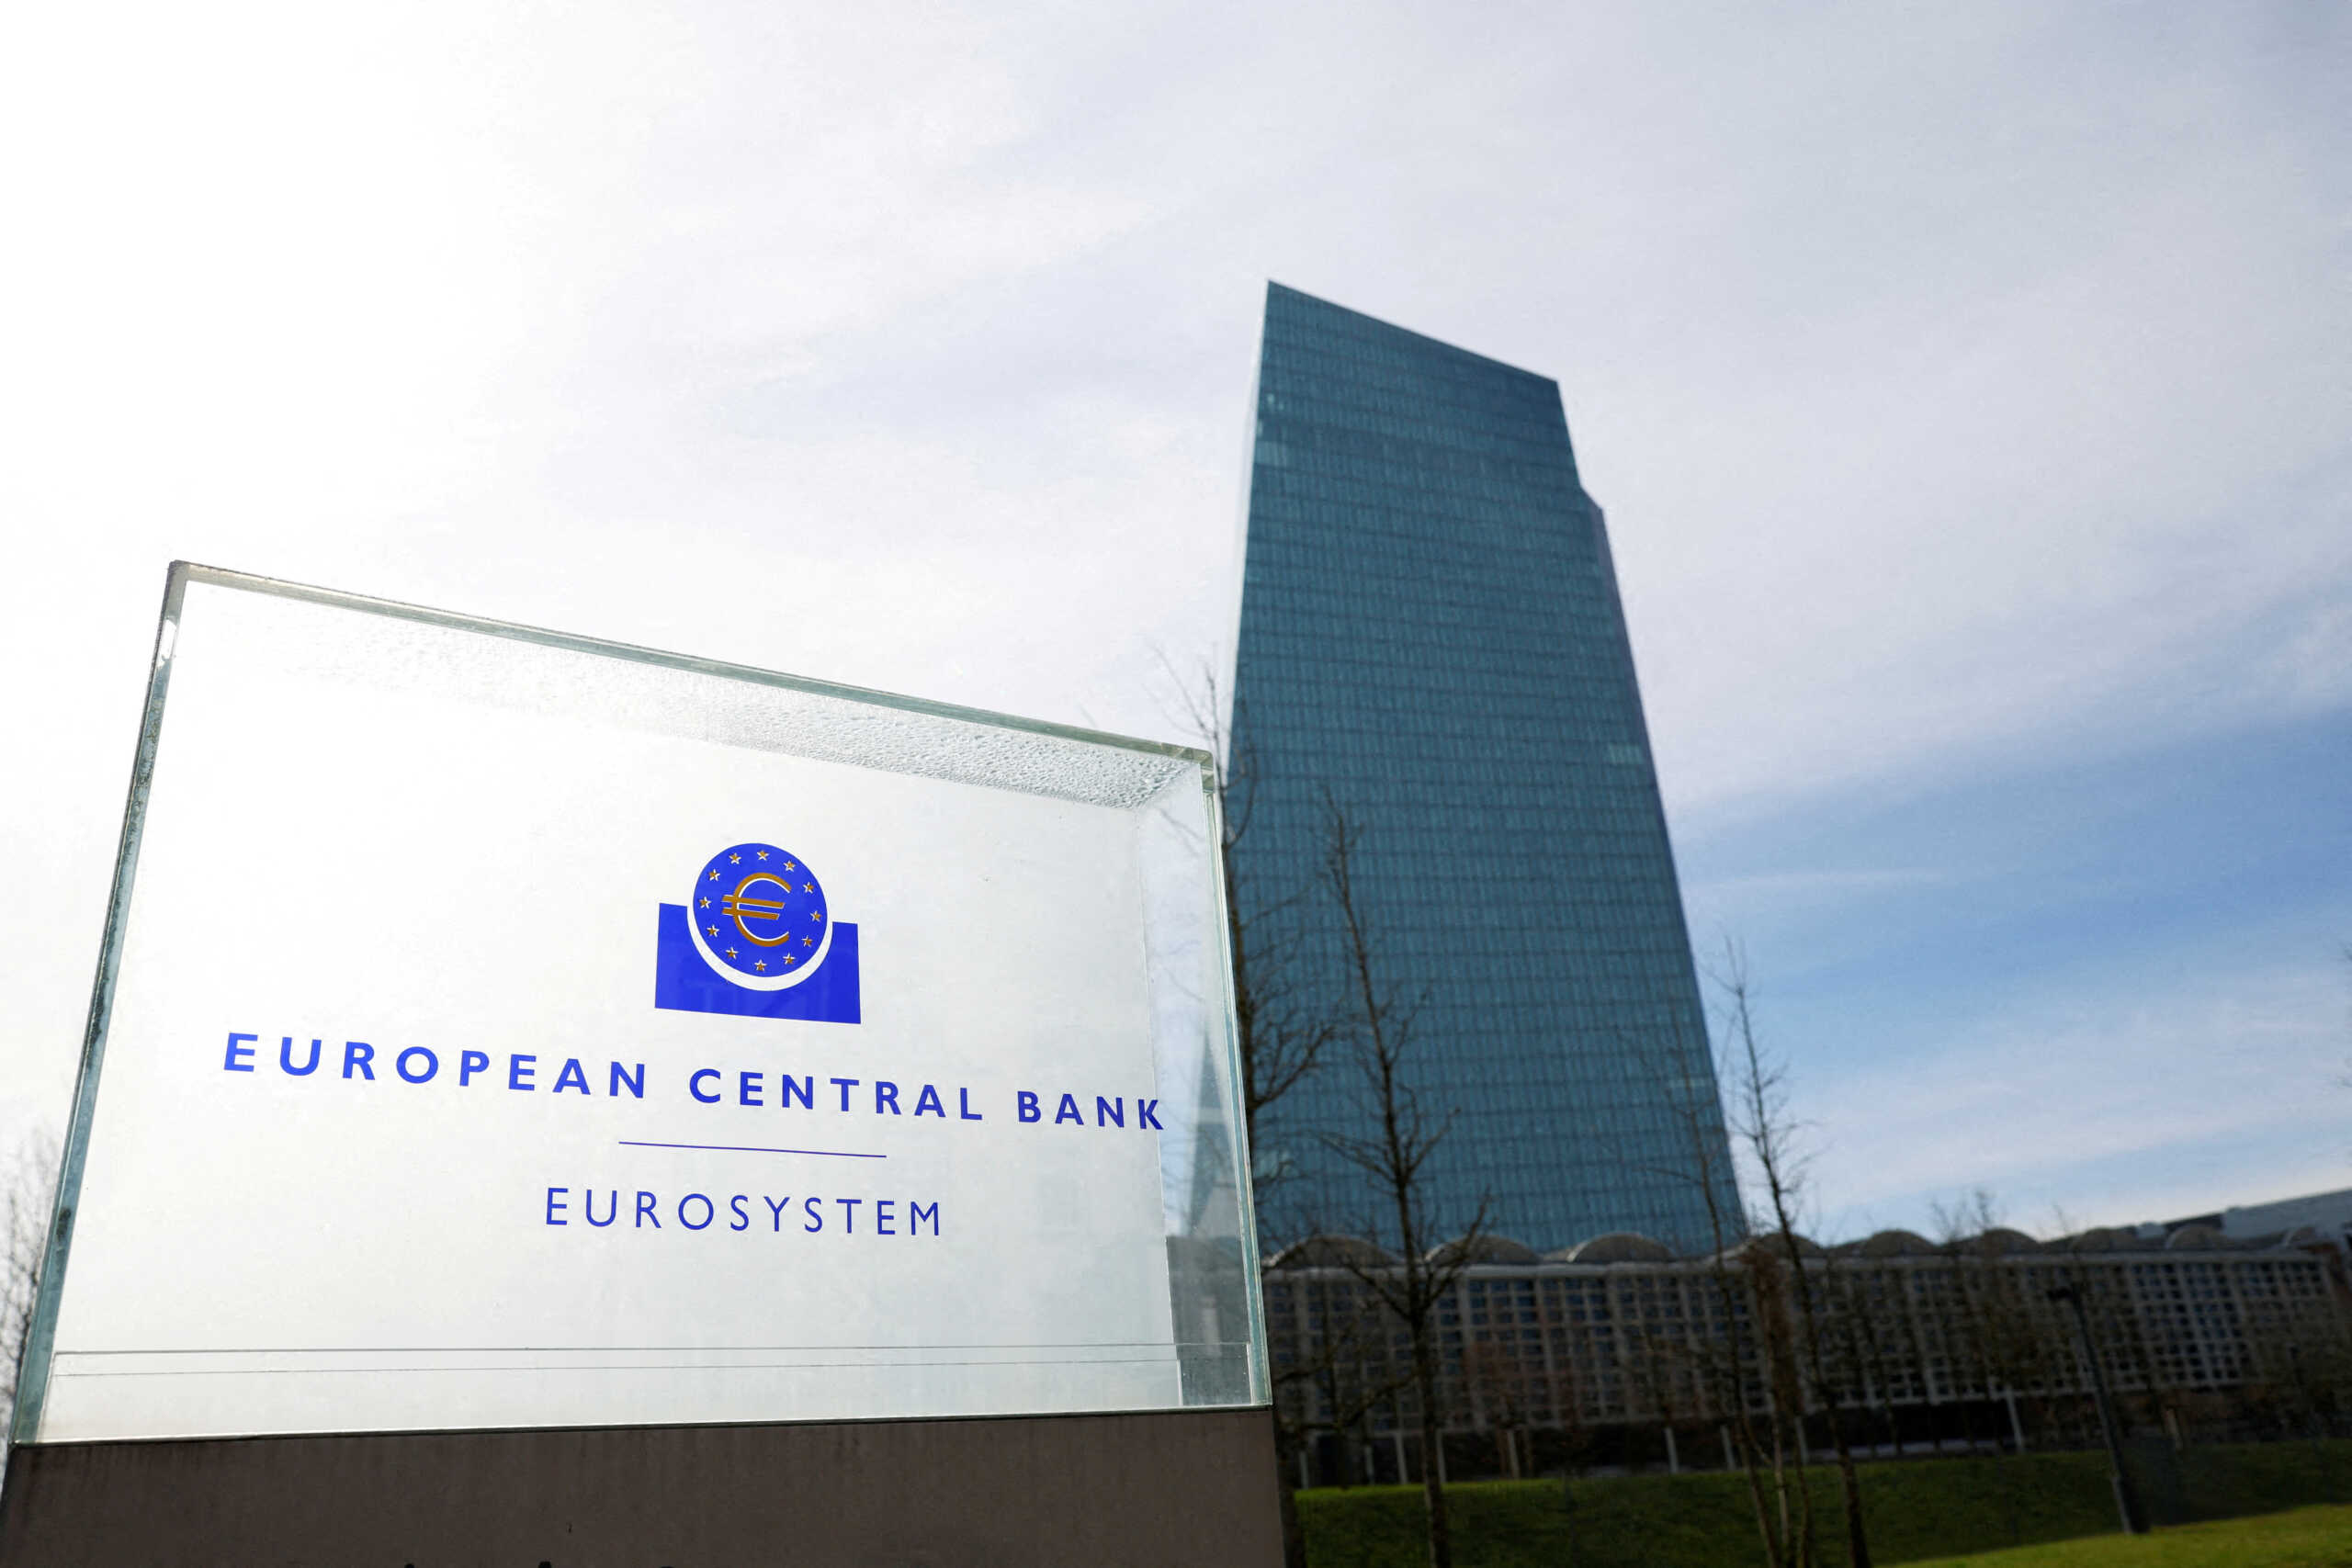 Γιατί πρέπει να προσέχουμε και τα δύο «χέρια» της ΕΚΤ και όχι μόνο το «δεξί» (επιτόκια). Το «αριστερό» για φέτος θέλει μεγάλη προσοχή